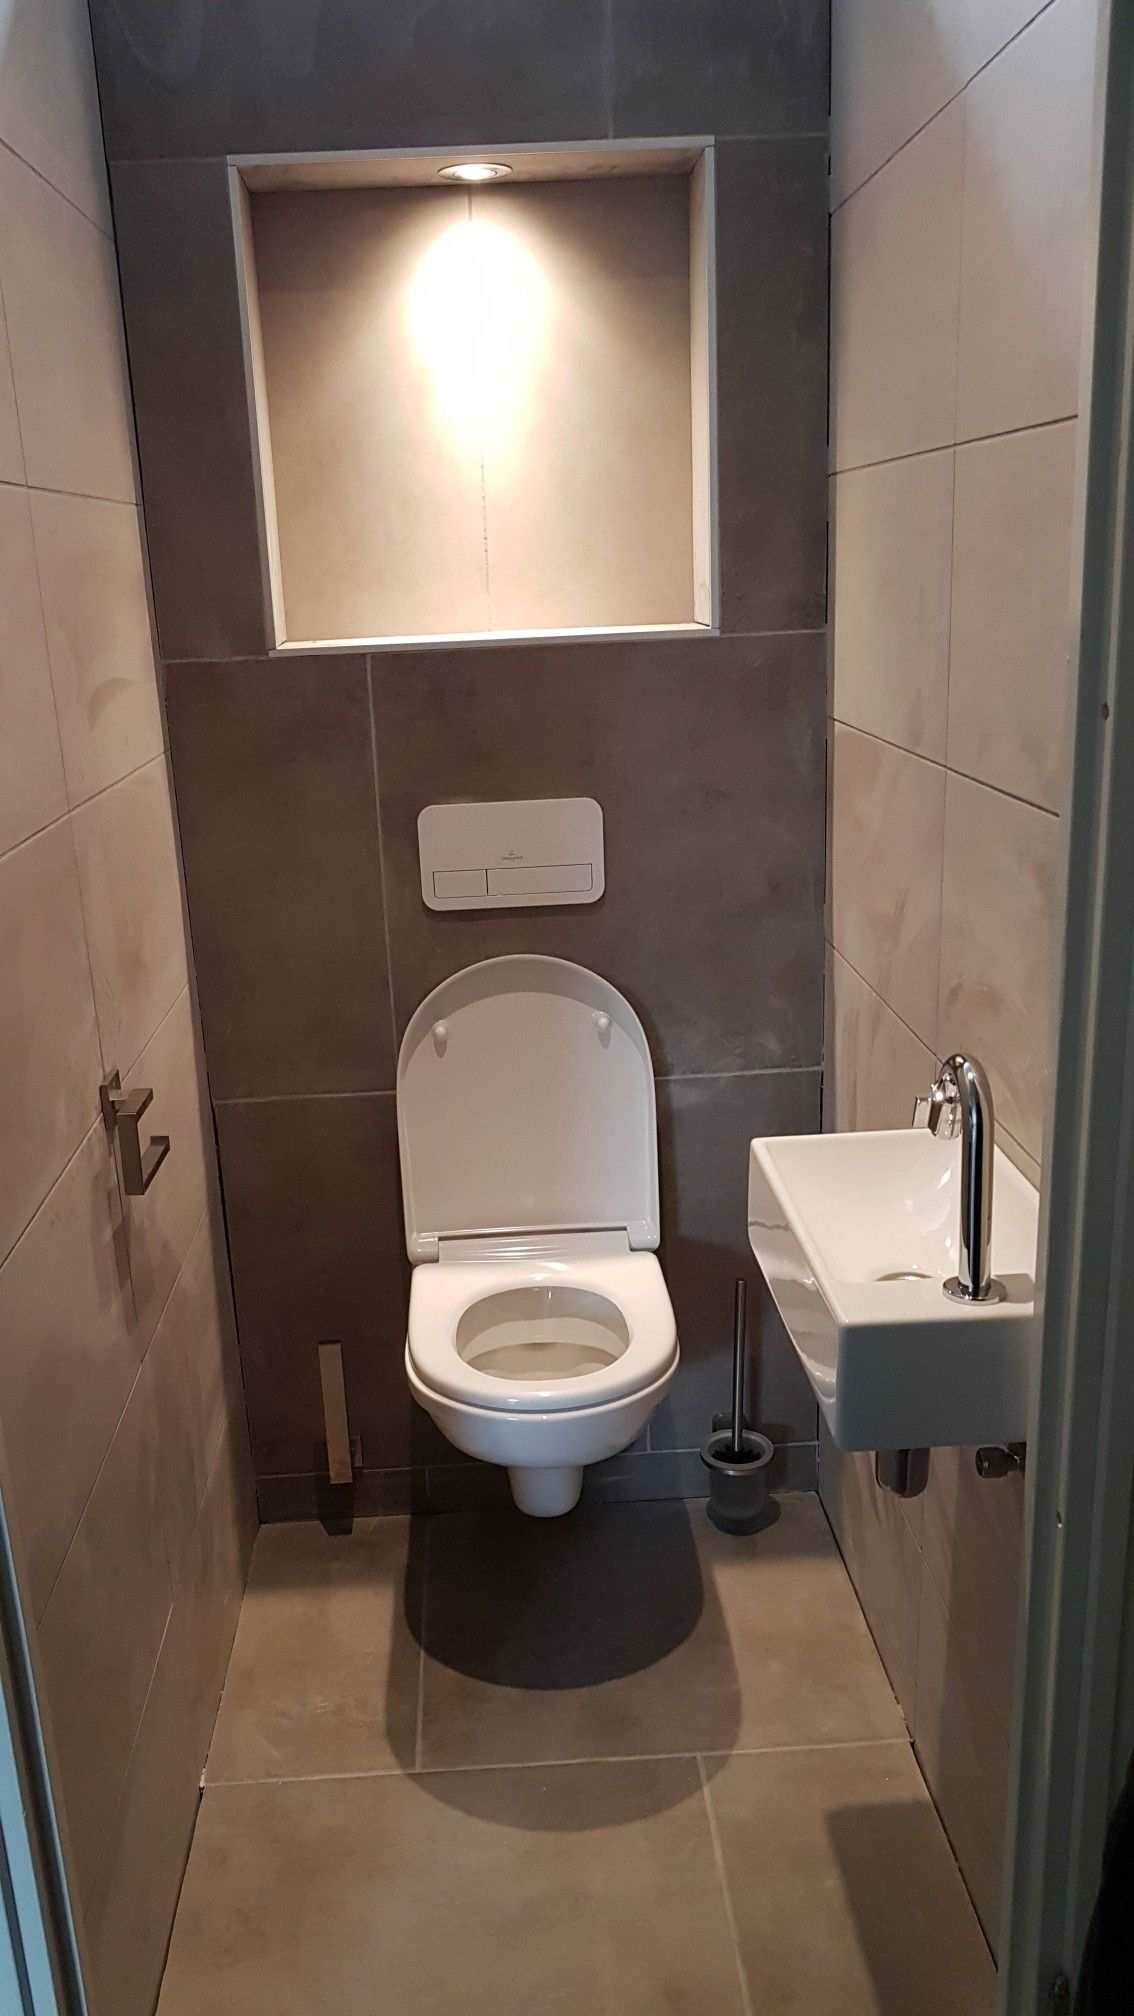 Toiletruimte Renoveren Tips En Tricks Om Je Toilet In Te Richten Badkamer Badkamerideeen Toiletruimte